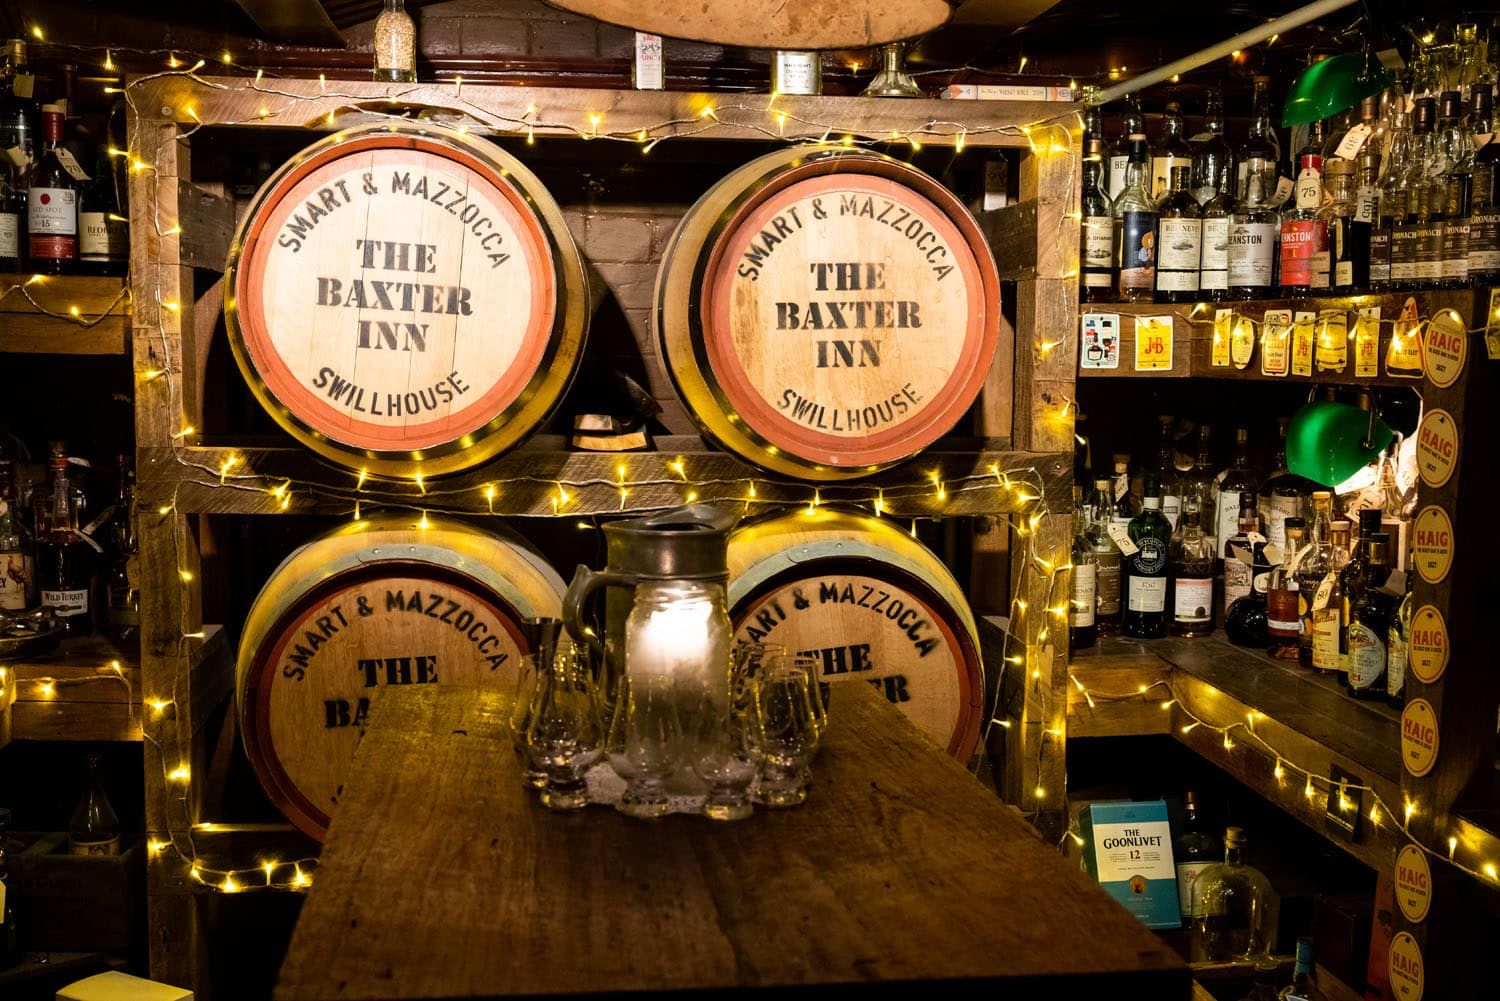 Baxter Inn Sydney Bars | Bars in Sydney